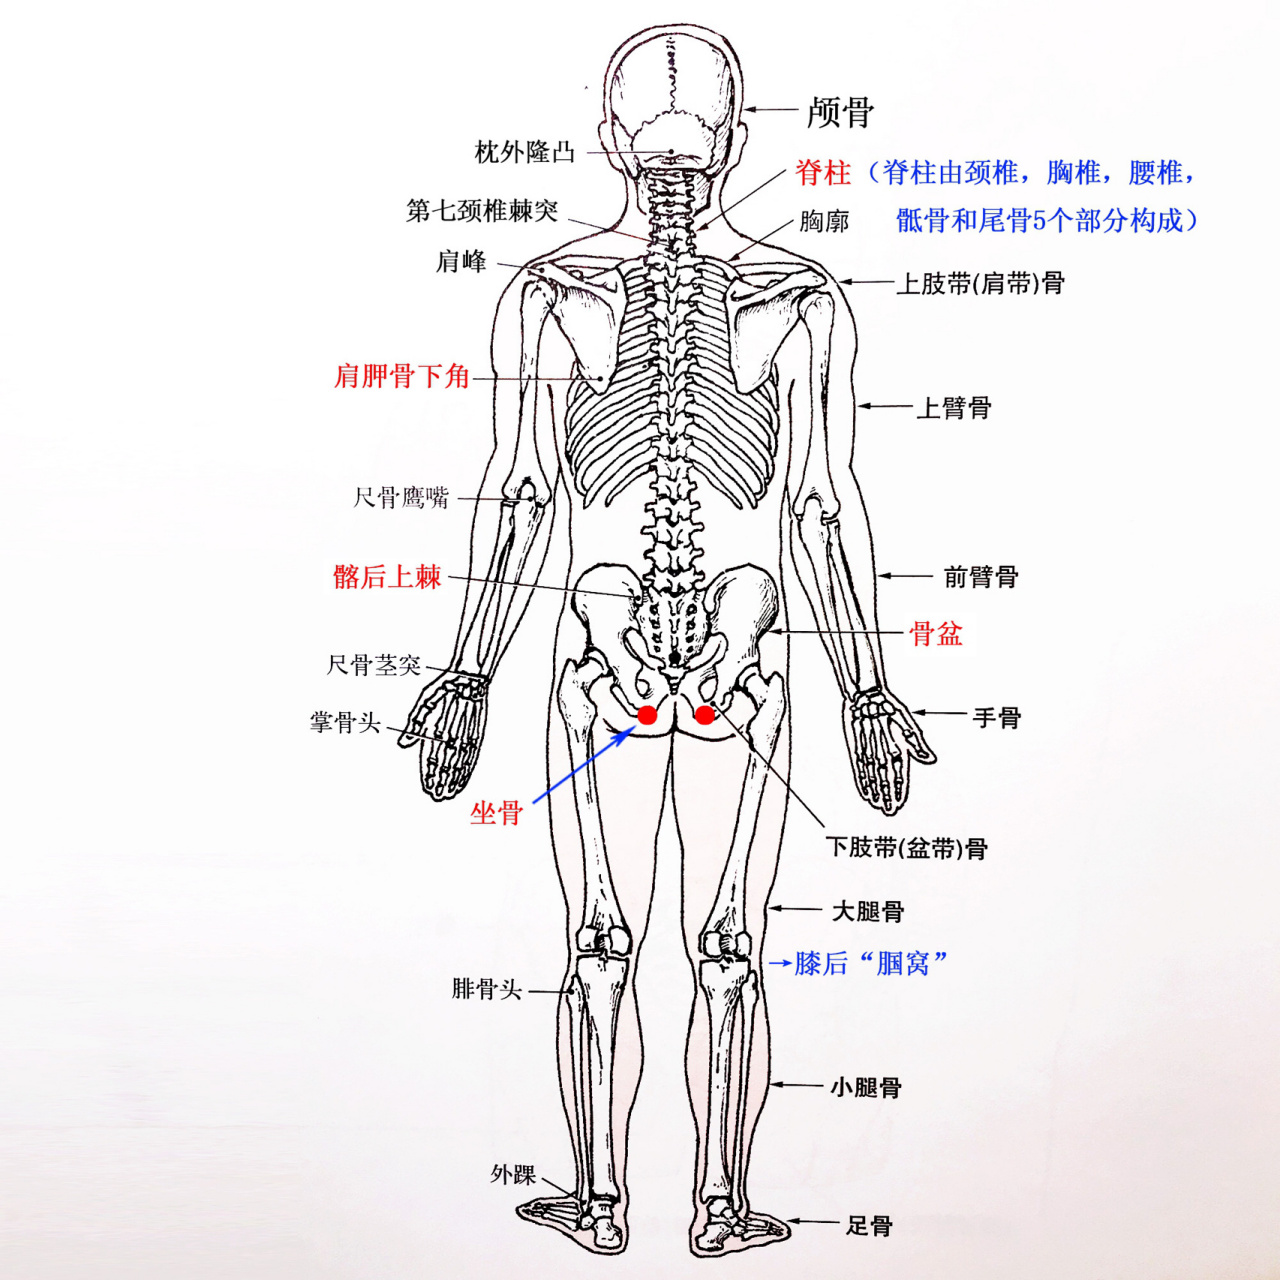 人体运动解剖图——16615骨骼篇04 人体全身骨骼数目,成年人有